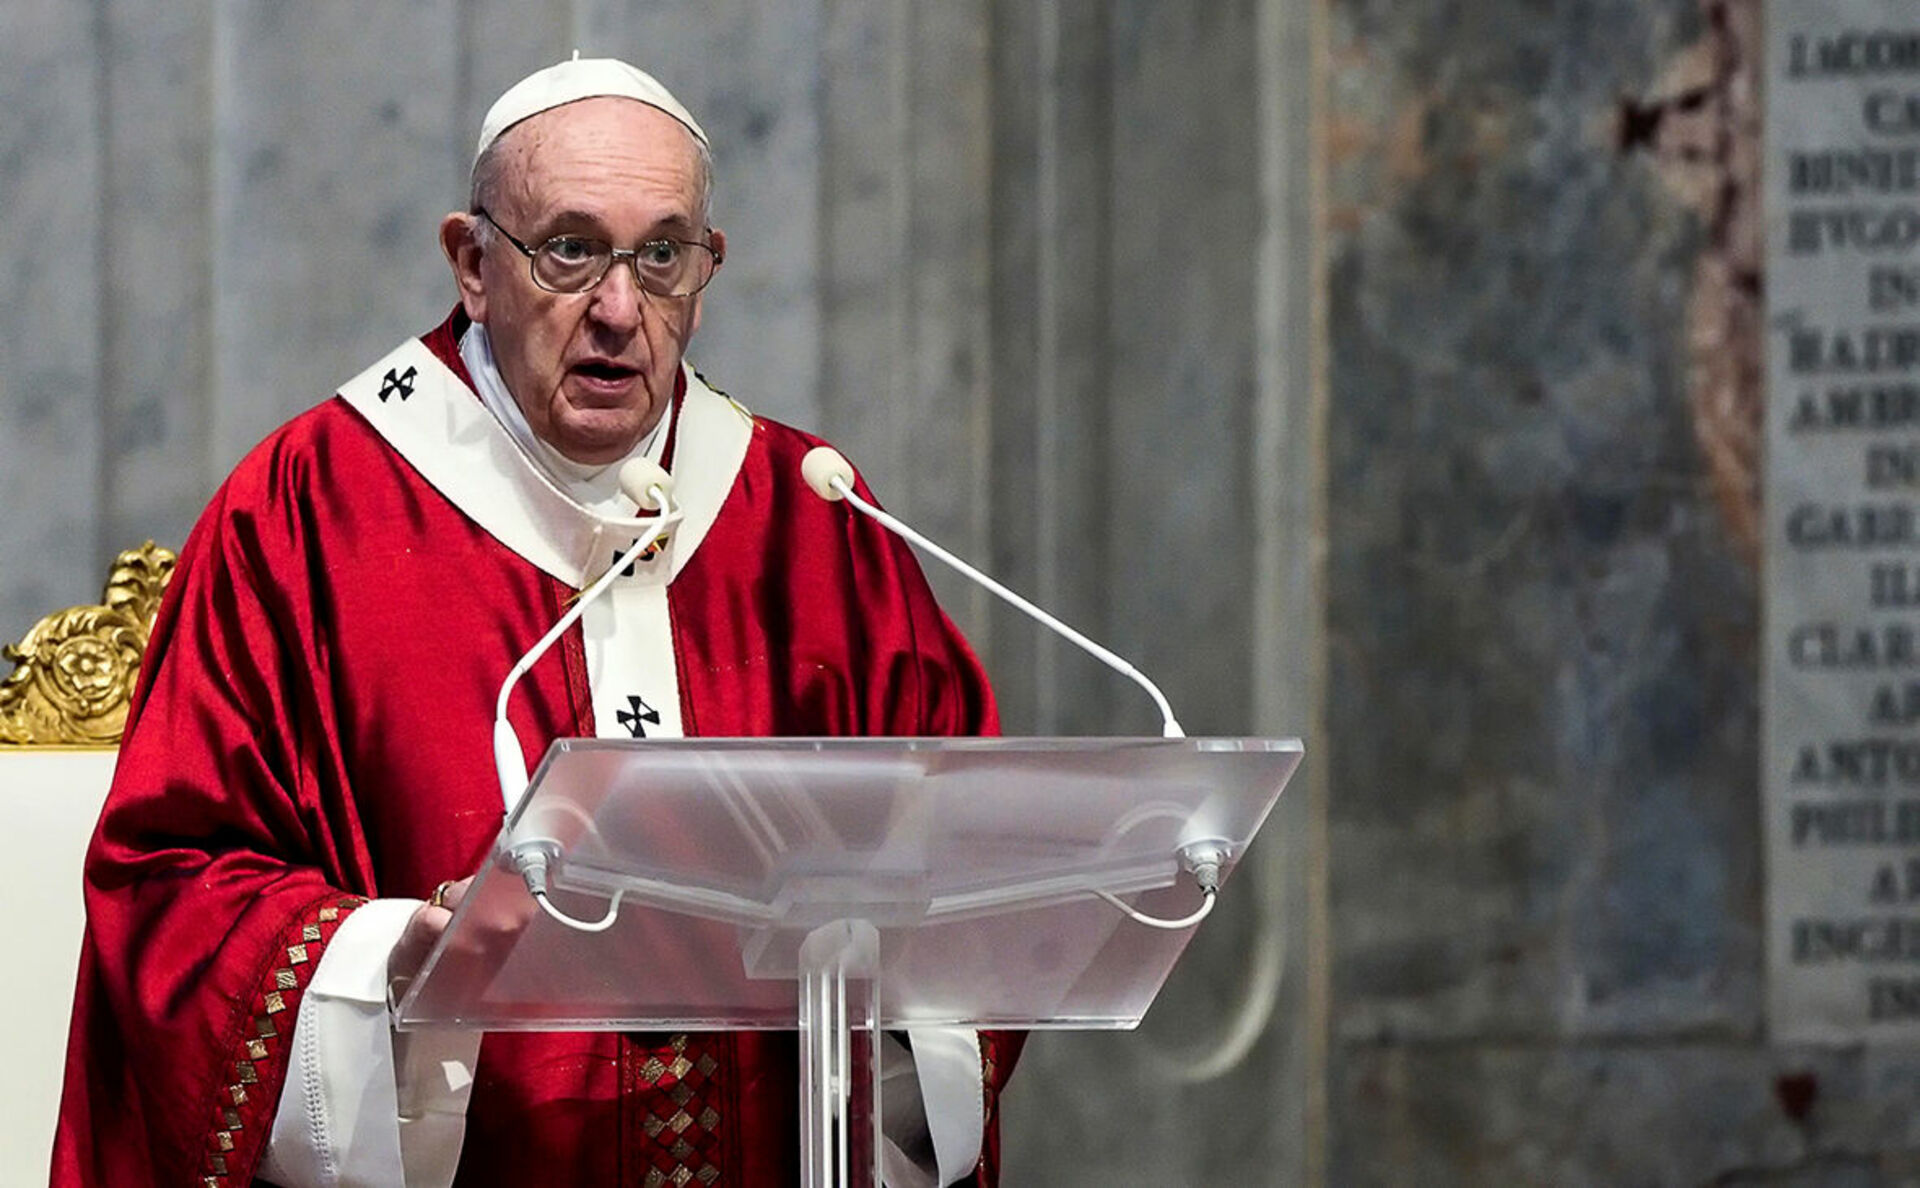 Франциск (папа Римский). Папа Римский Франциск 2020. Папа Римский Франциск 2022. Франциск 1 папа Римский. Папа римский о войне